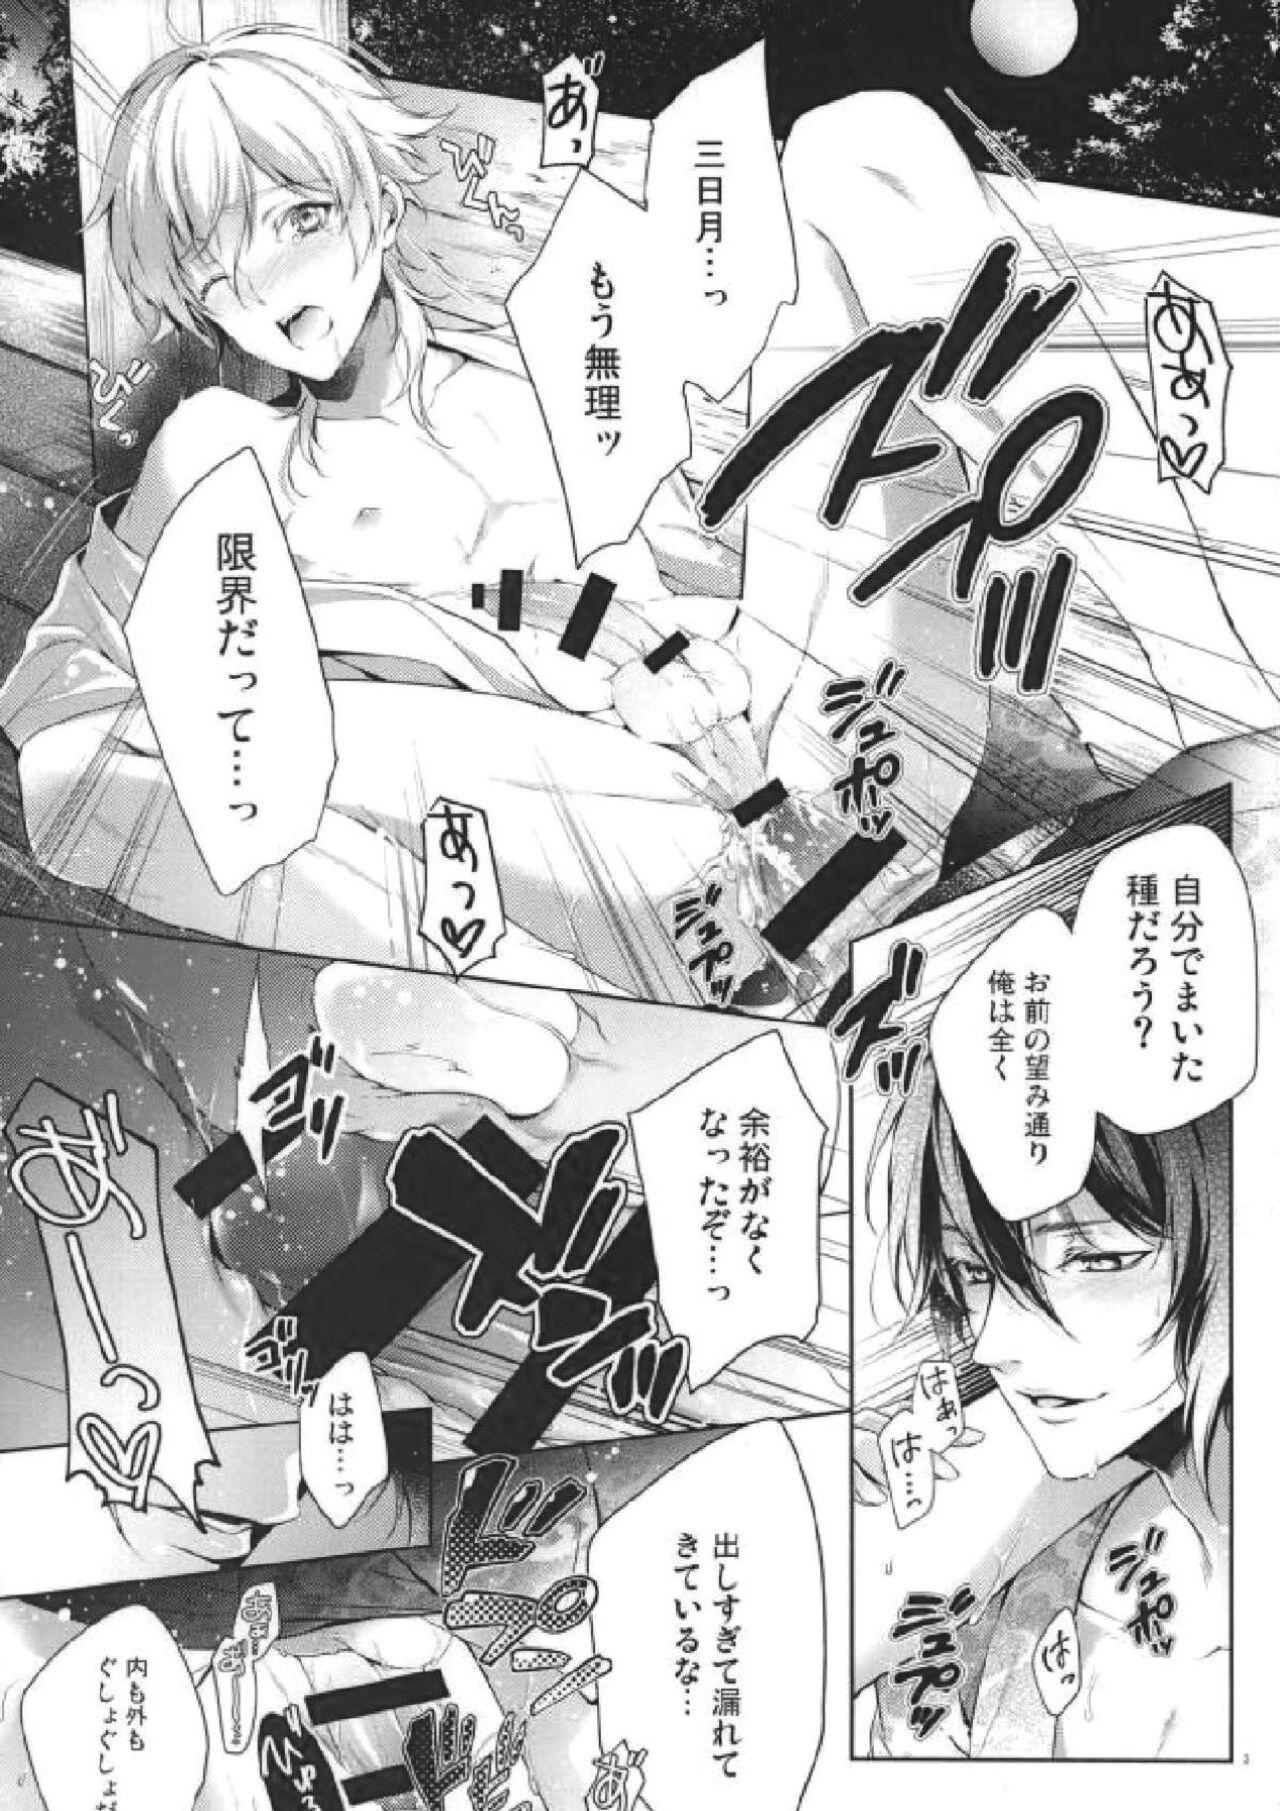 Lesbians O kusuri no youhou · youryou wa tadashiku mamotte tsukaimashou - Touken ranbu Cachonda - Page 2